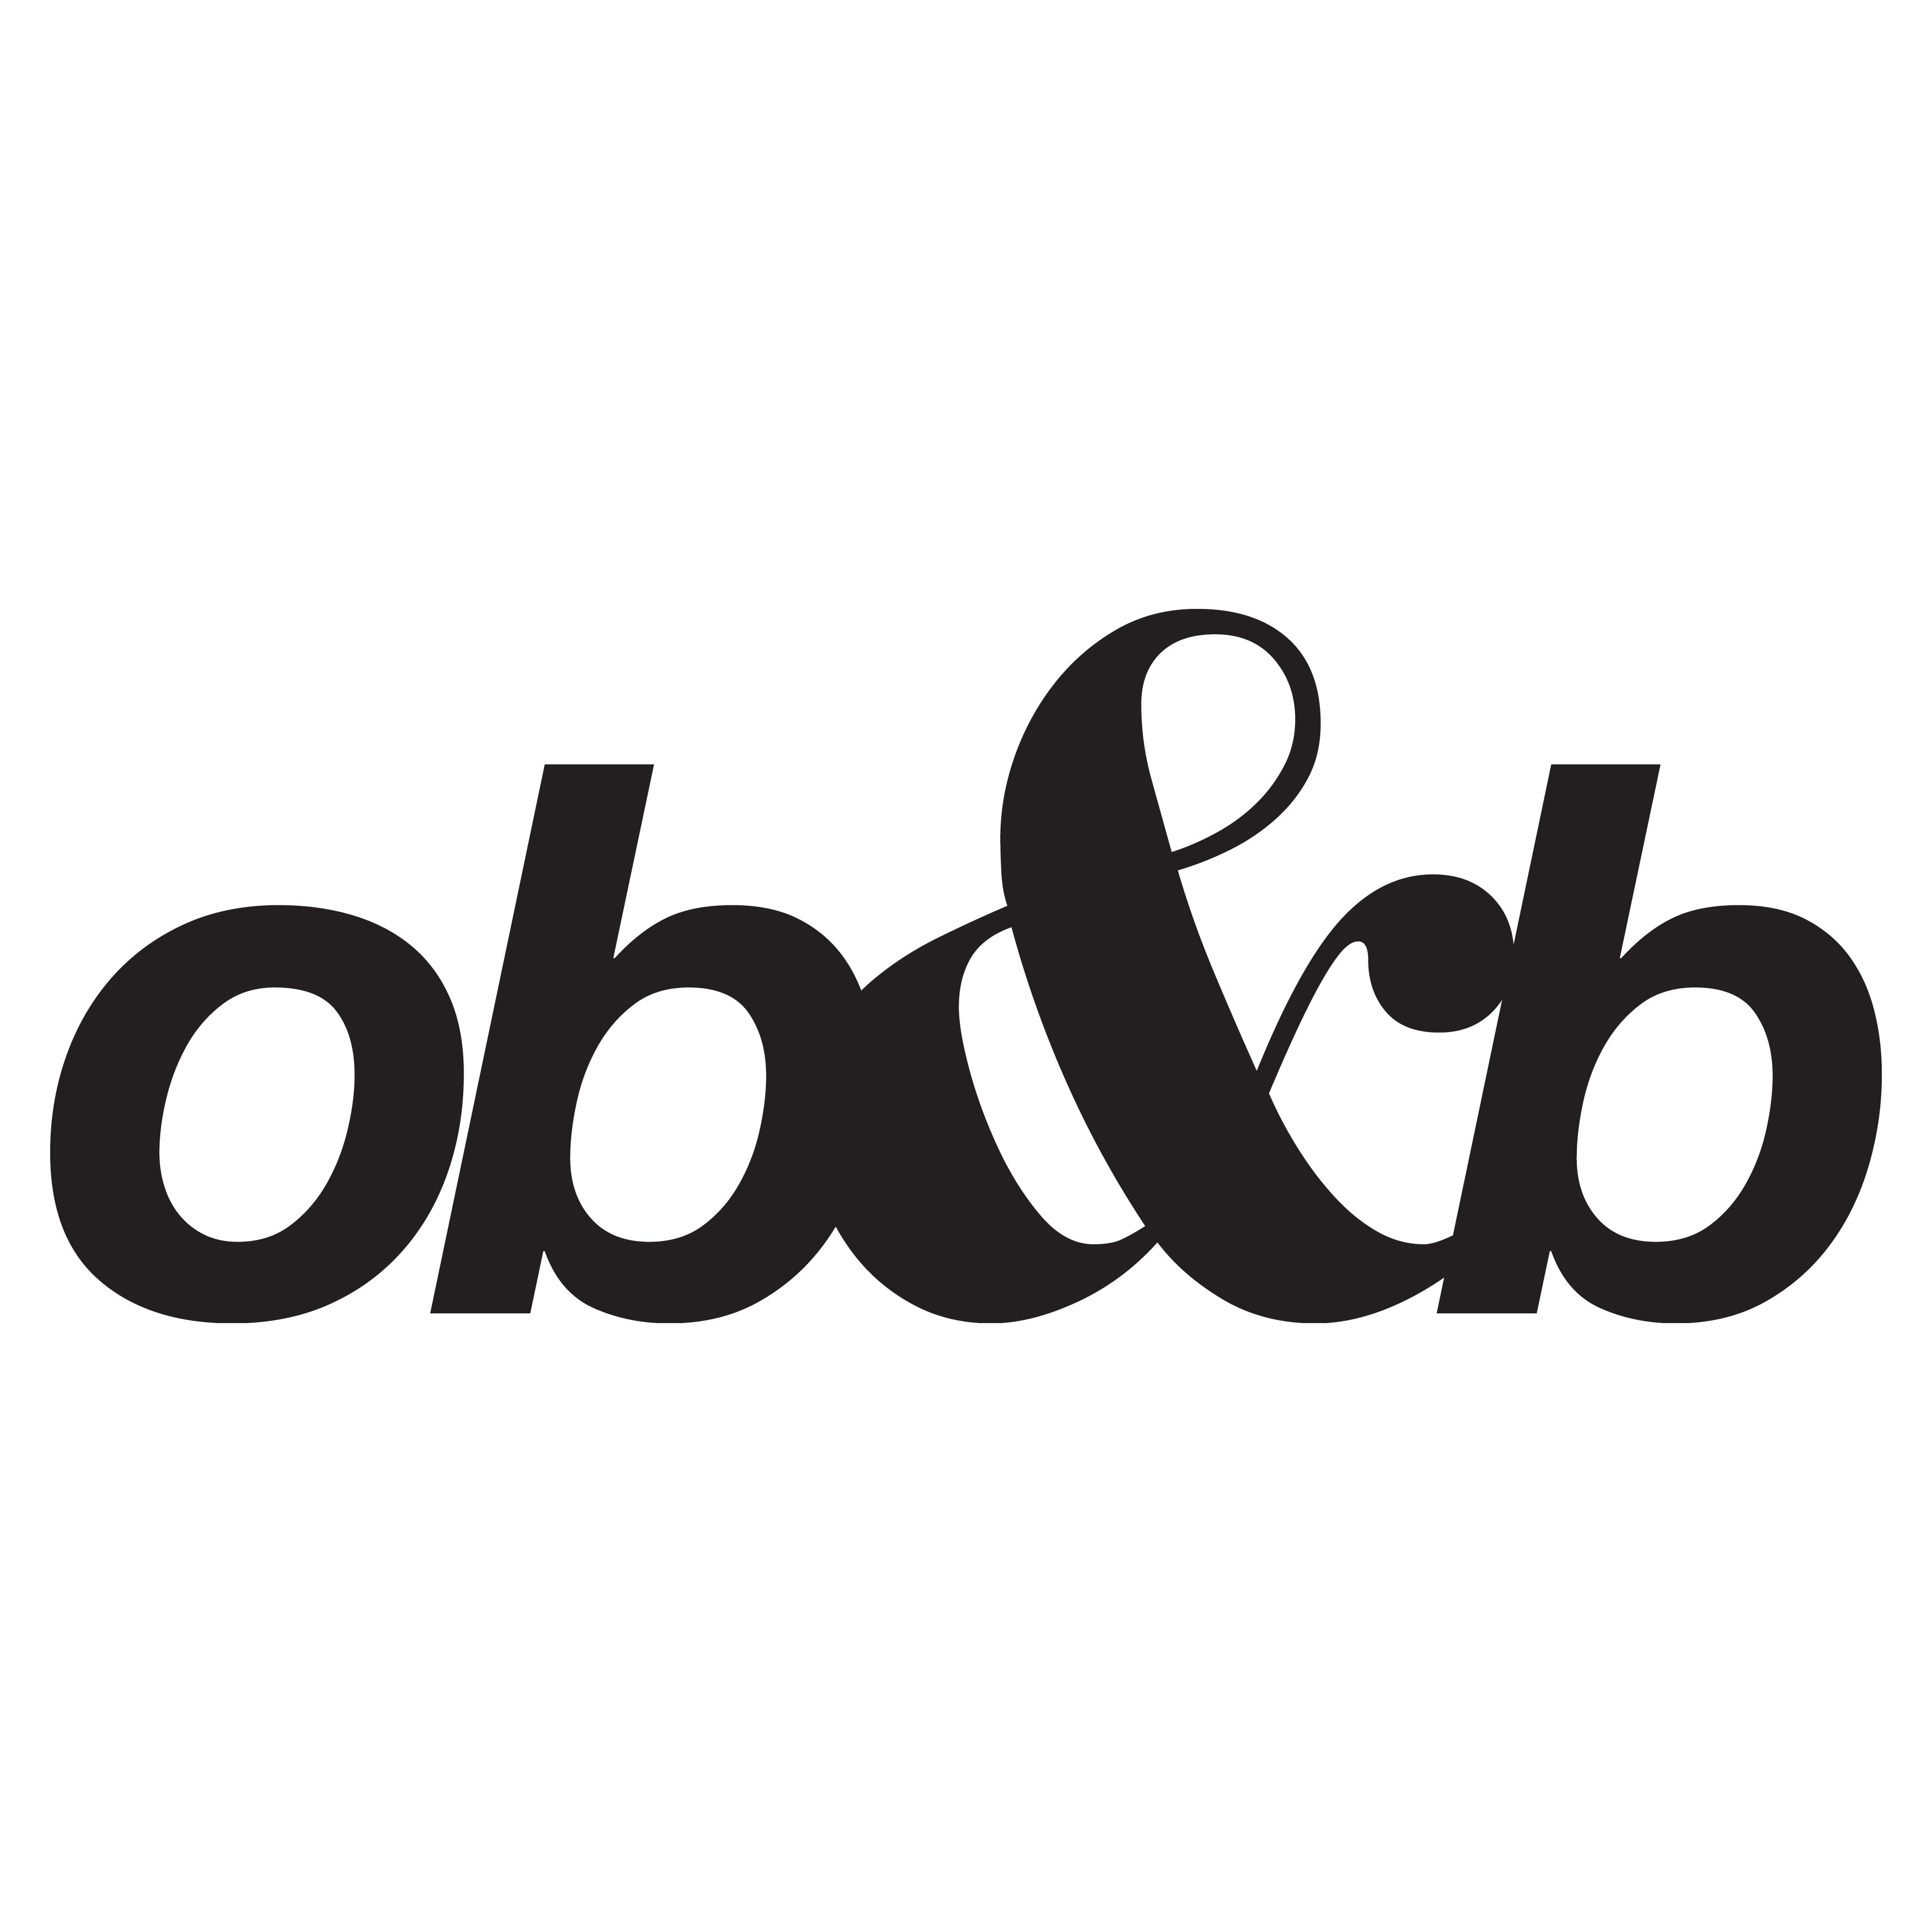 ob&b